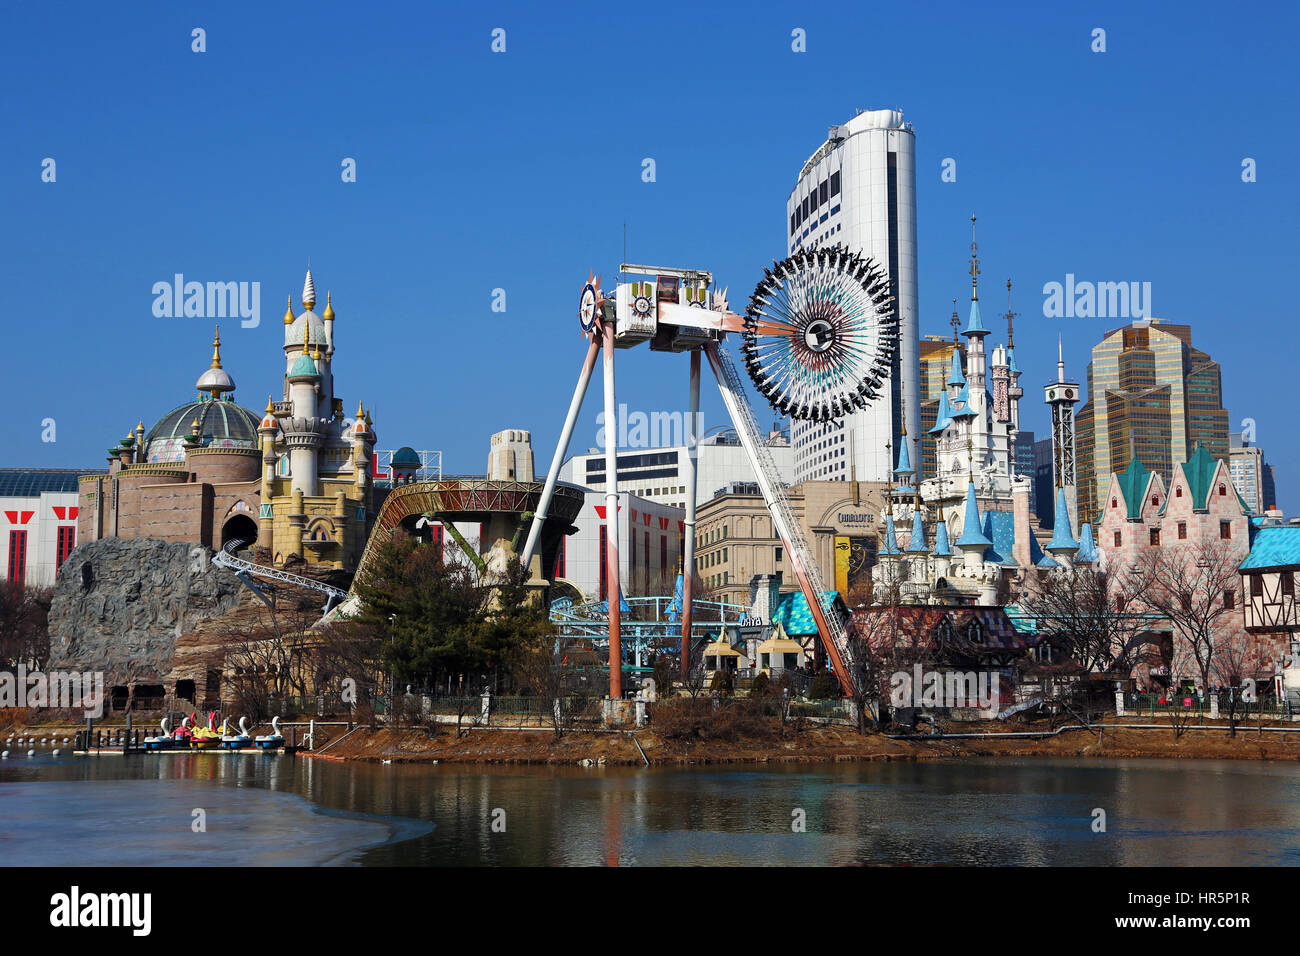 Le parc de thème du Monde de Lotte Jamsil, à Séoul, Corée Banque D'Images